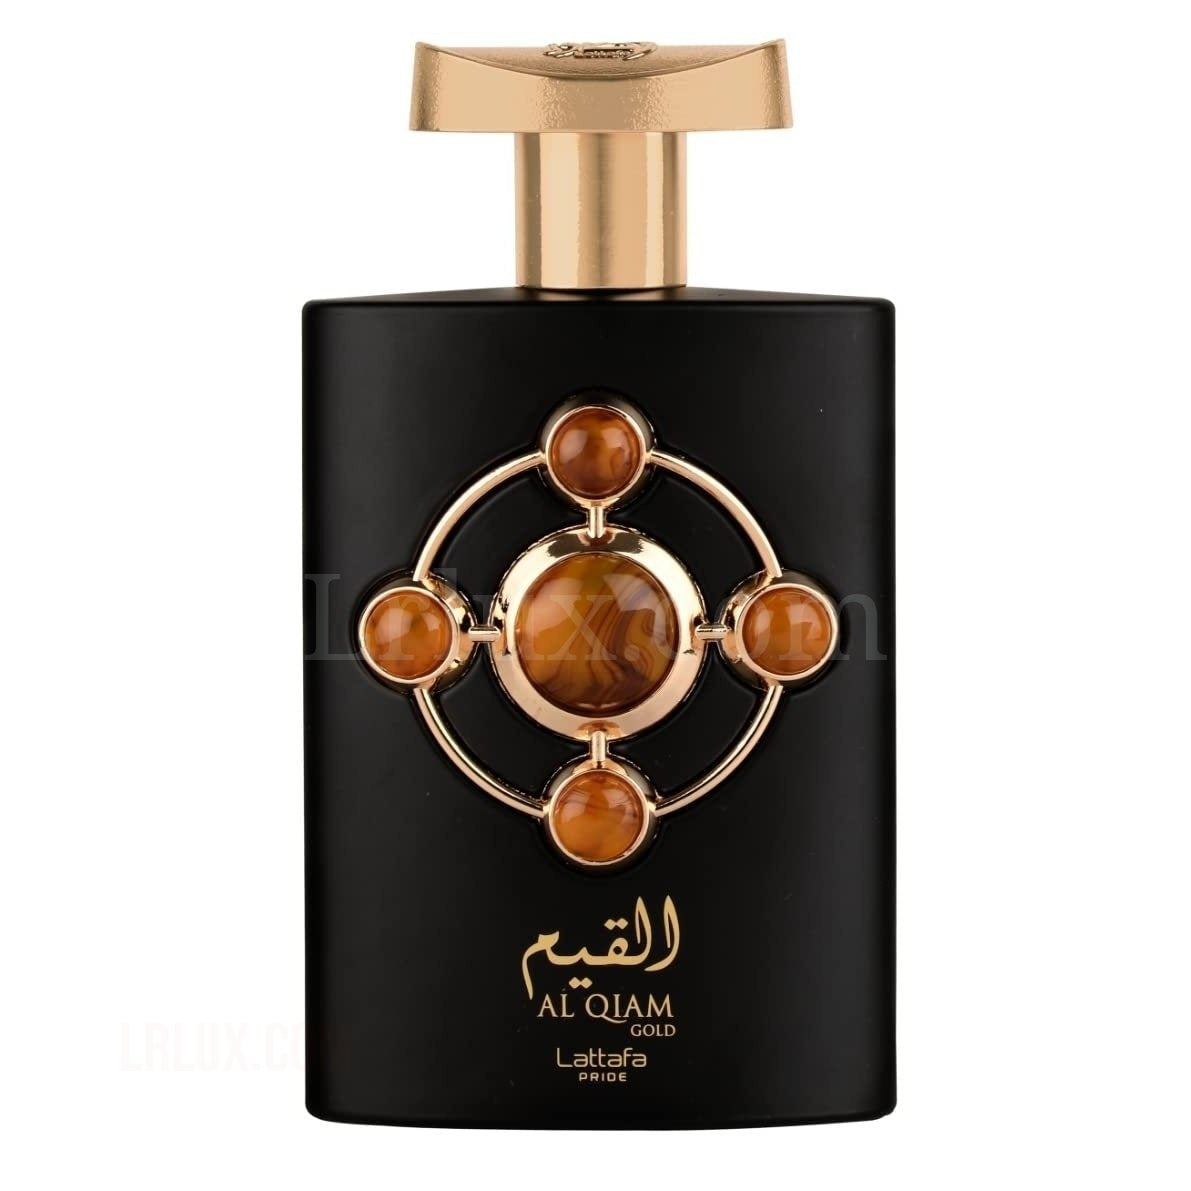 Al Qiam Gold for Unisex Eau de Parfum Spray, 3.4 Ounce